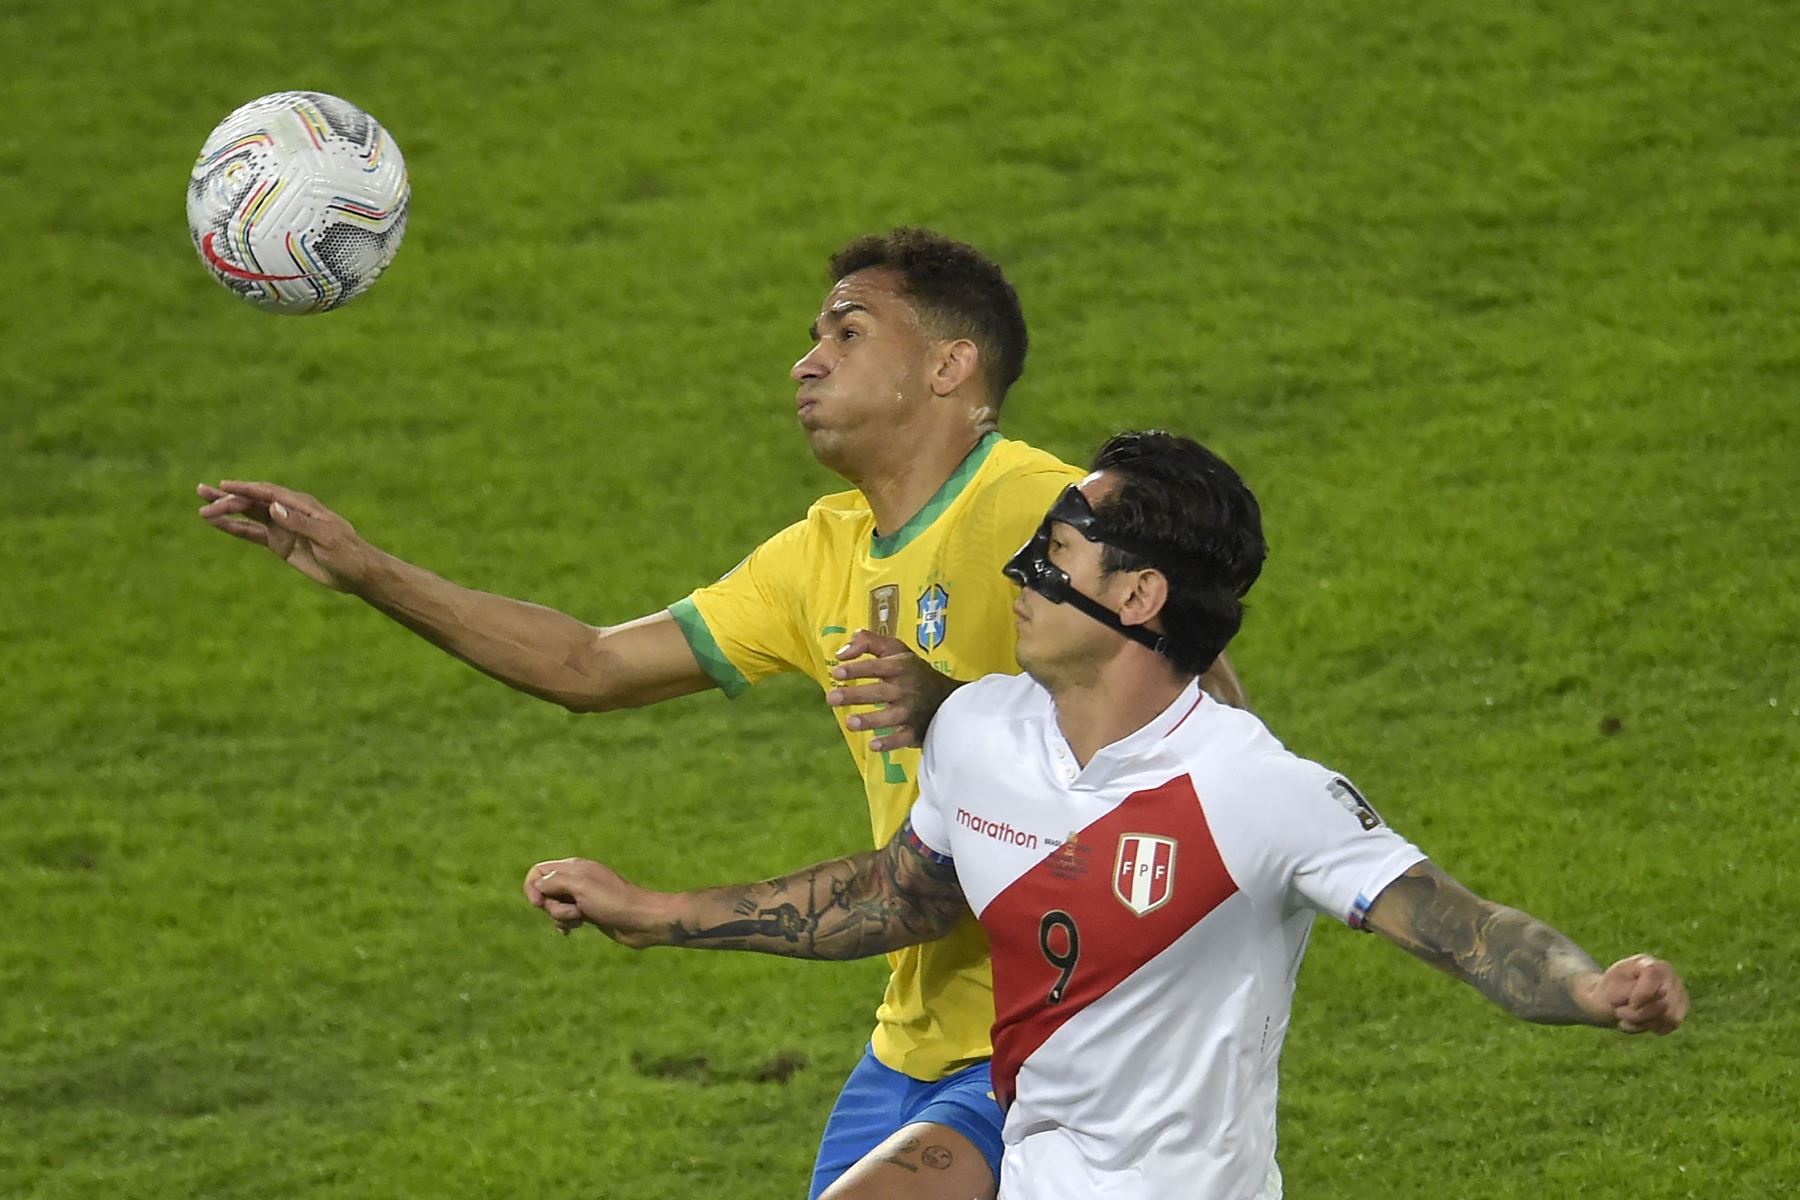 El brasileño Danilo y el peruano Gianluca Lapadula compiten por el balón durante la semifinal del torneo de fútbol de la Copa América Conmebol 2021 en el estadio Nilton Santos de Río de Janeiro, Brasil.
Foto: AFP